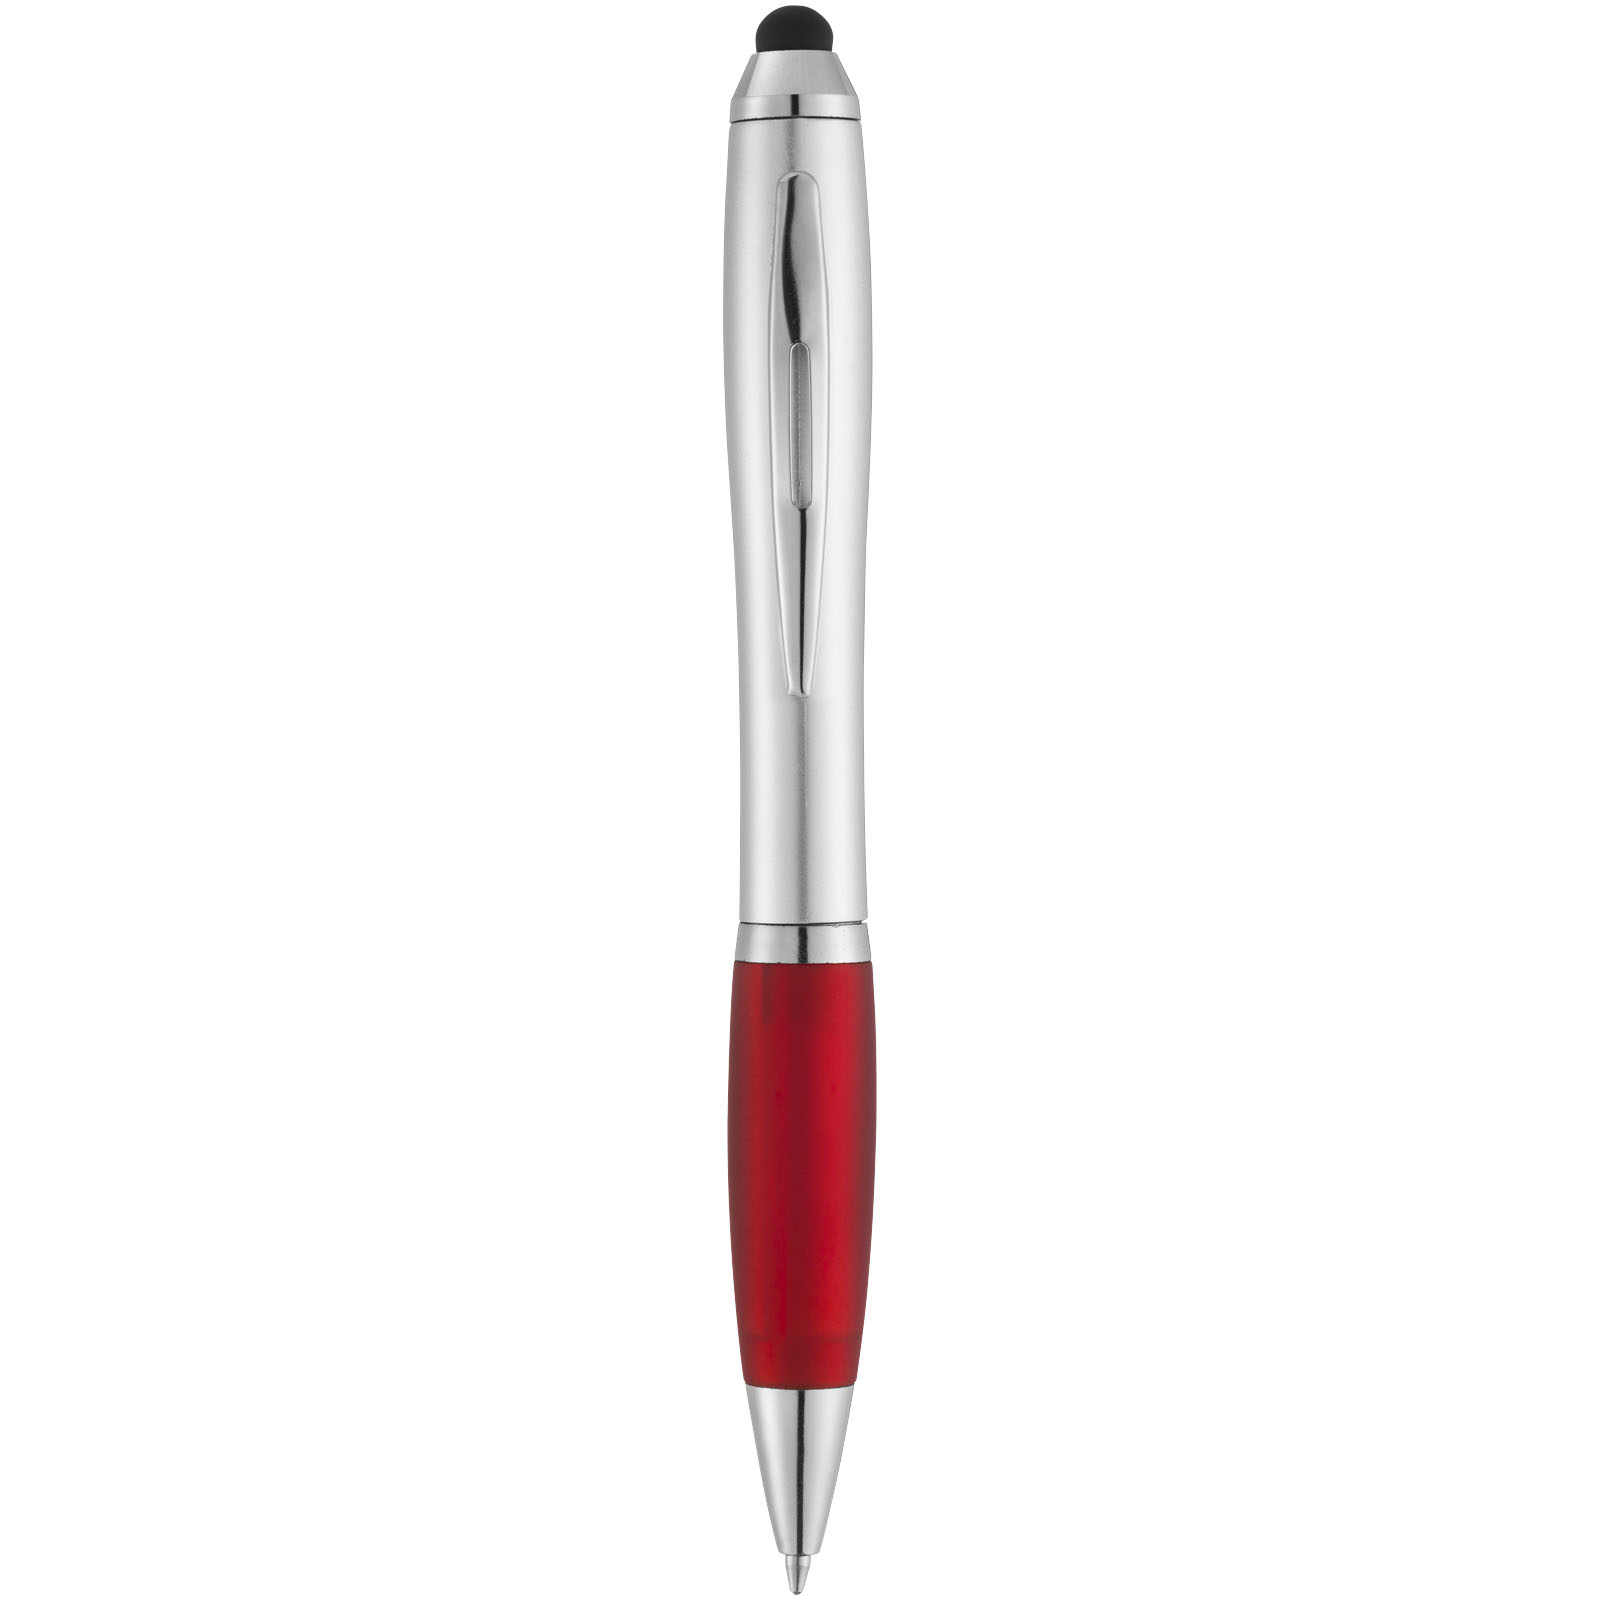 Ballpoint Pens - Nash stylus ballpoint with coloured grip